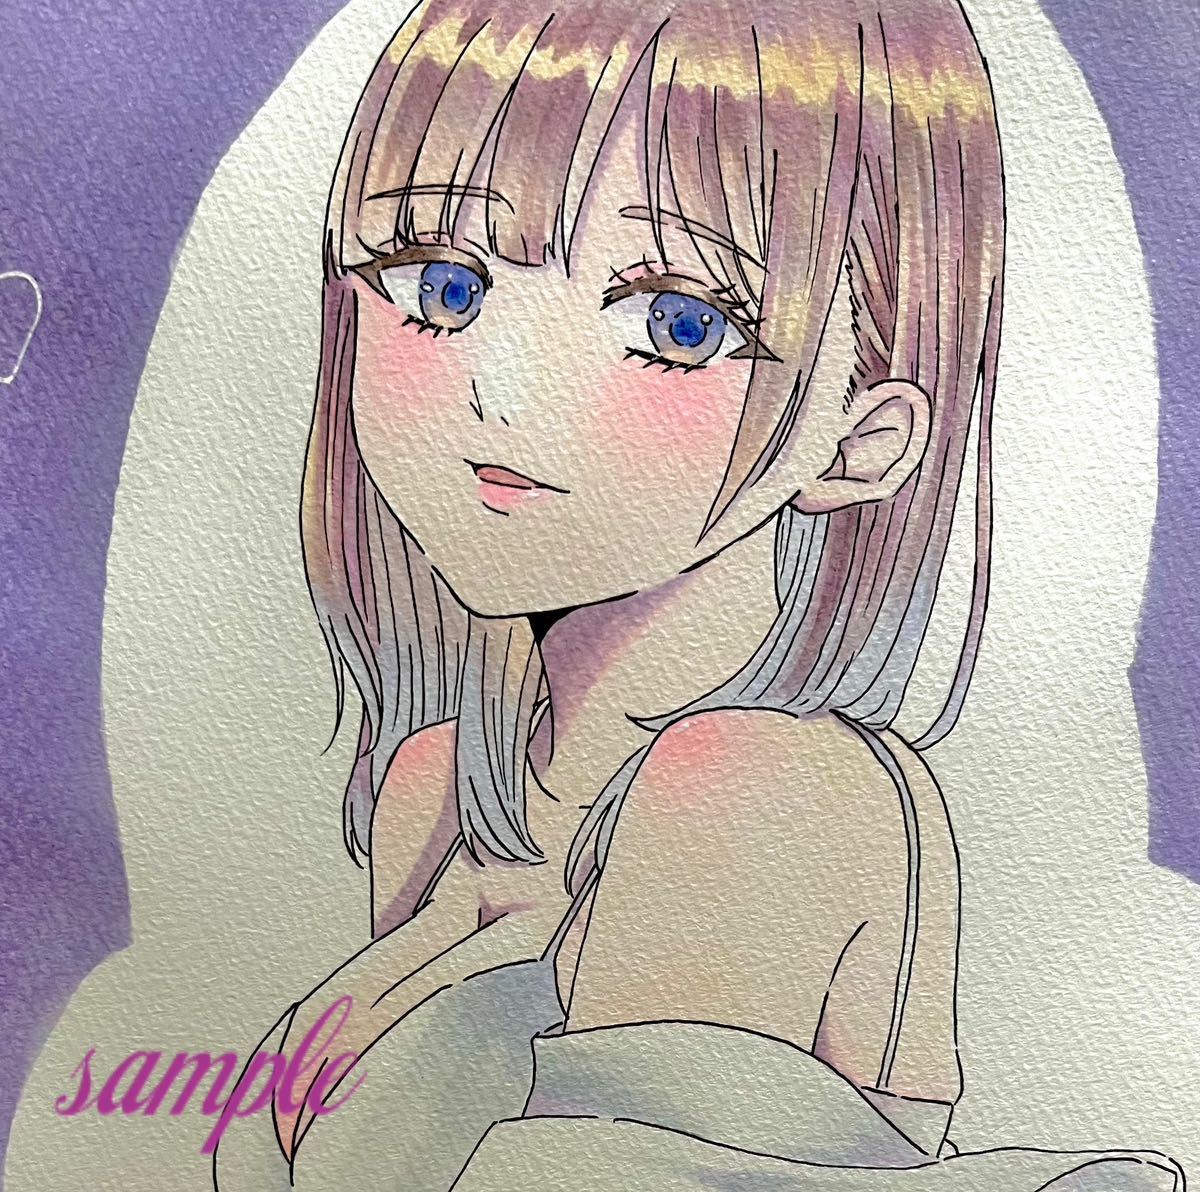 Handgezeichnete Illustration Handgeschriebenes Original Analog Girl Copic Illustration im A4-Format Weiße Hose Niedlich, Comics, Anime-Waren, handgezeichnete Illustration